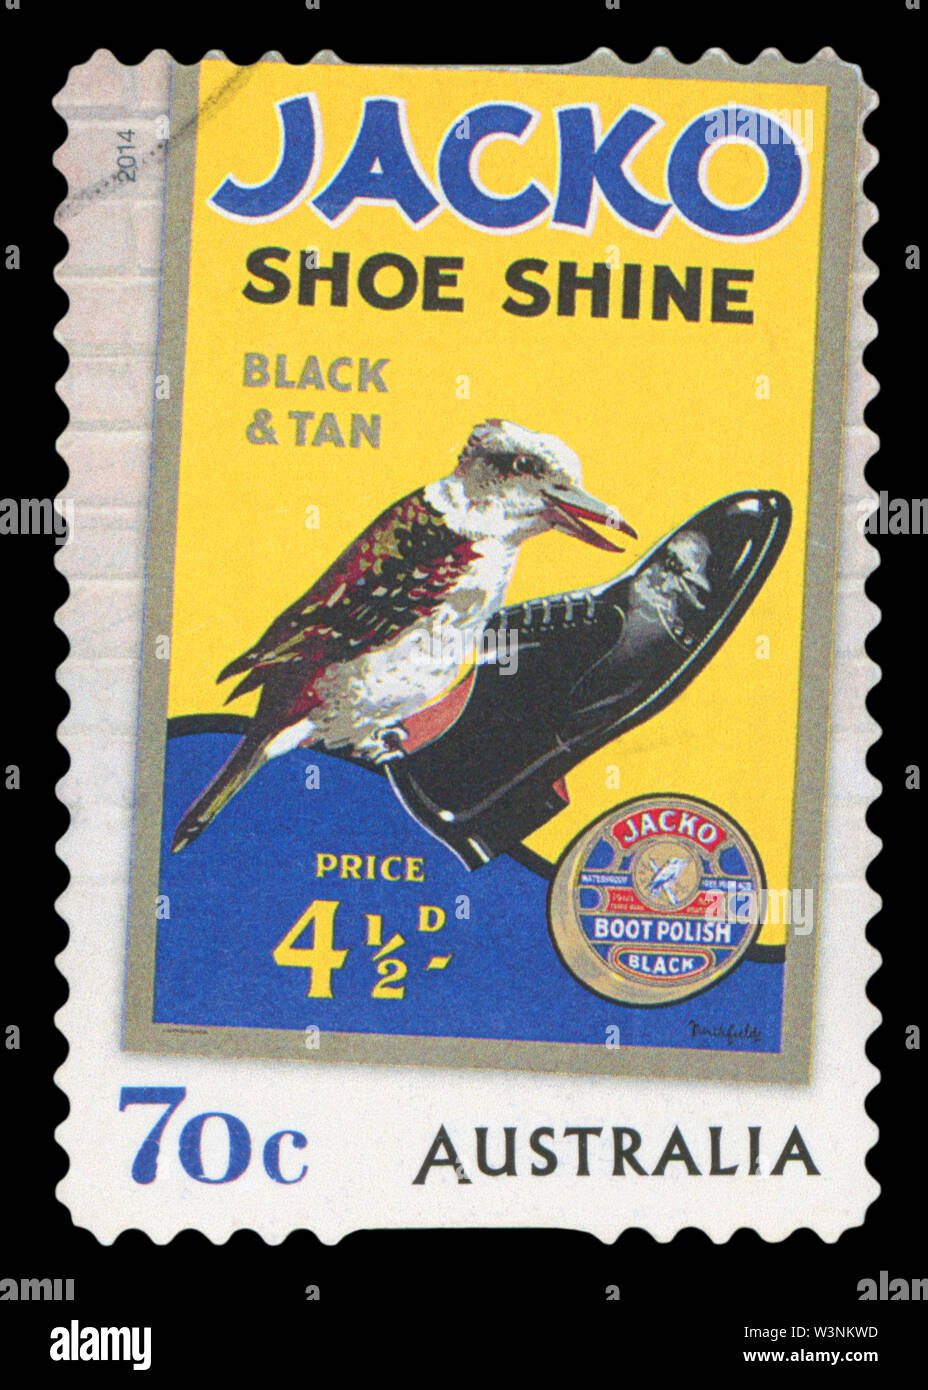 Australien - ca. 2014: eine stornierte Briefmarke aus Australien, alte Werbung für Jacko, Schuhputzmaschine/-service, Black & Tan, circa 2014. Stockfoto